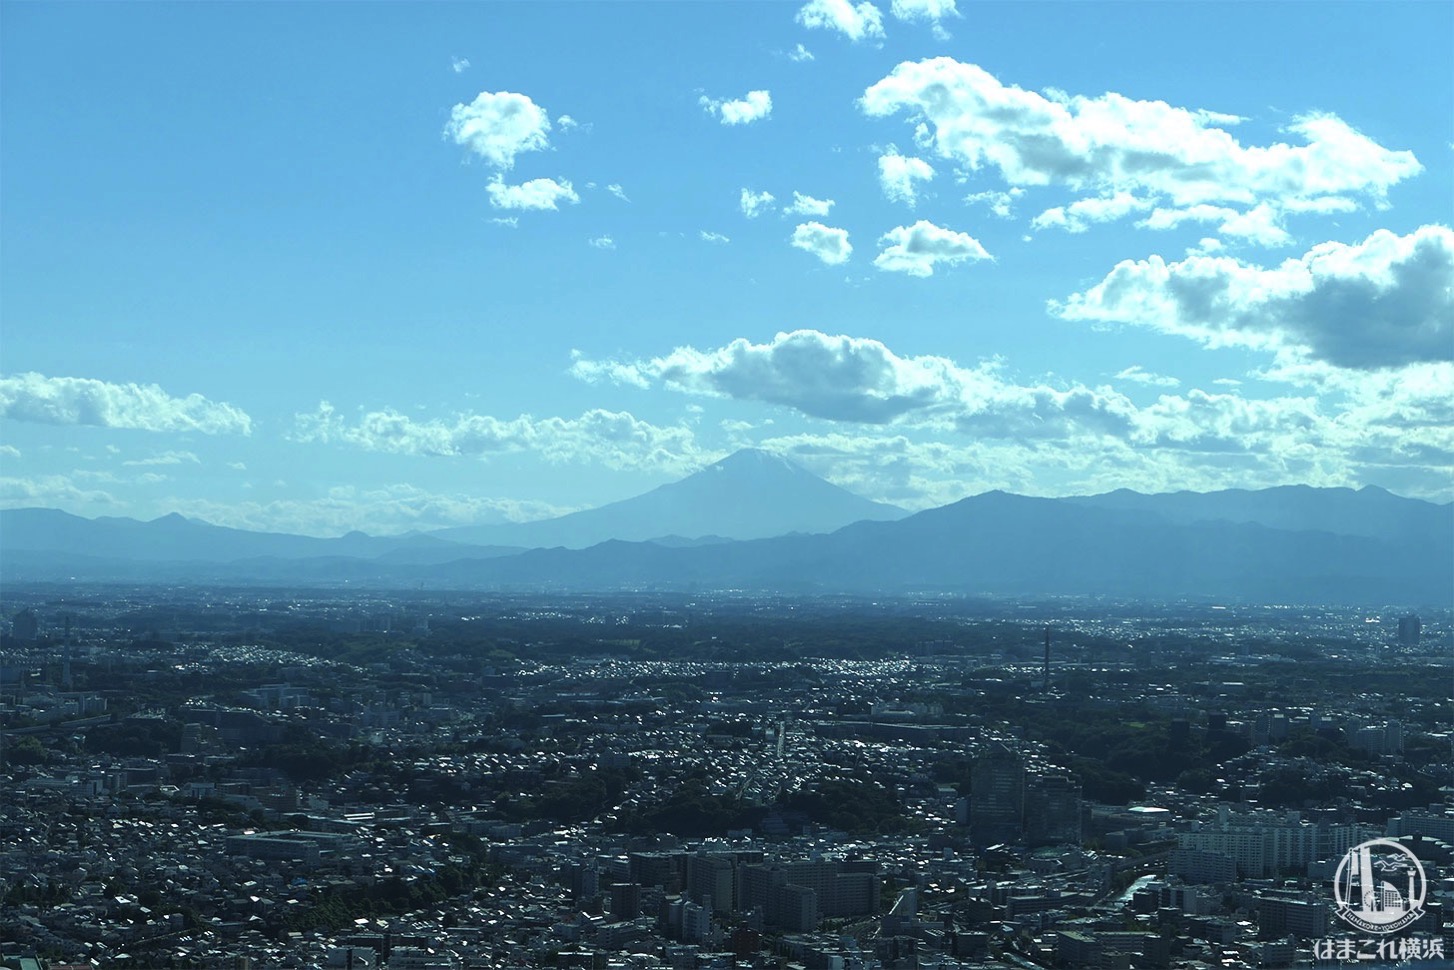 ソファ席から見た富士山